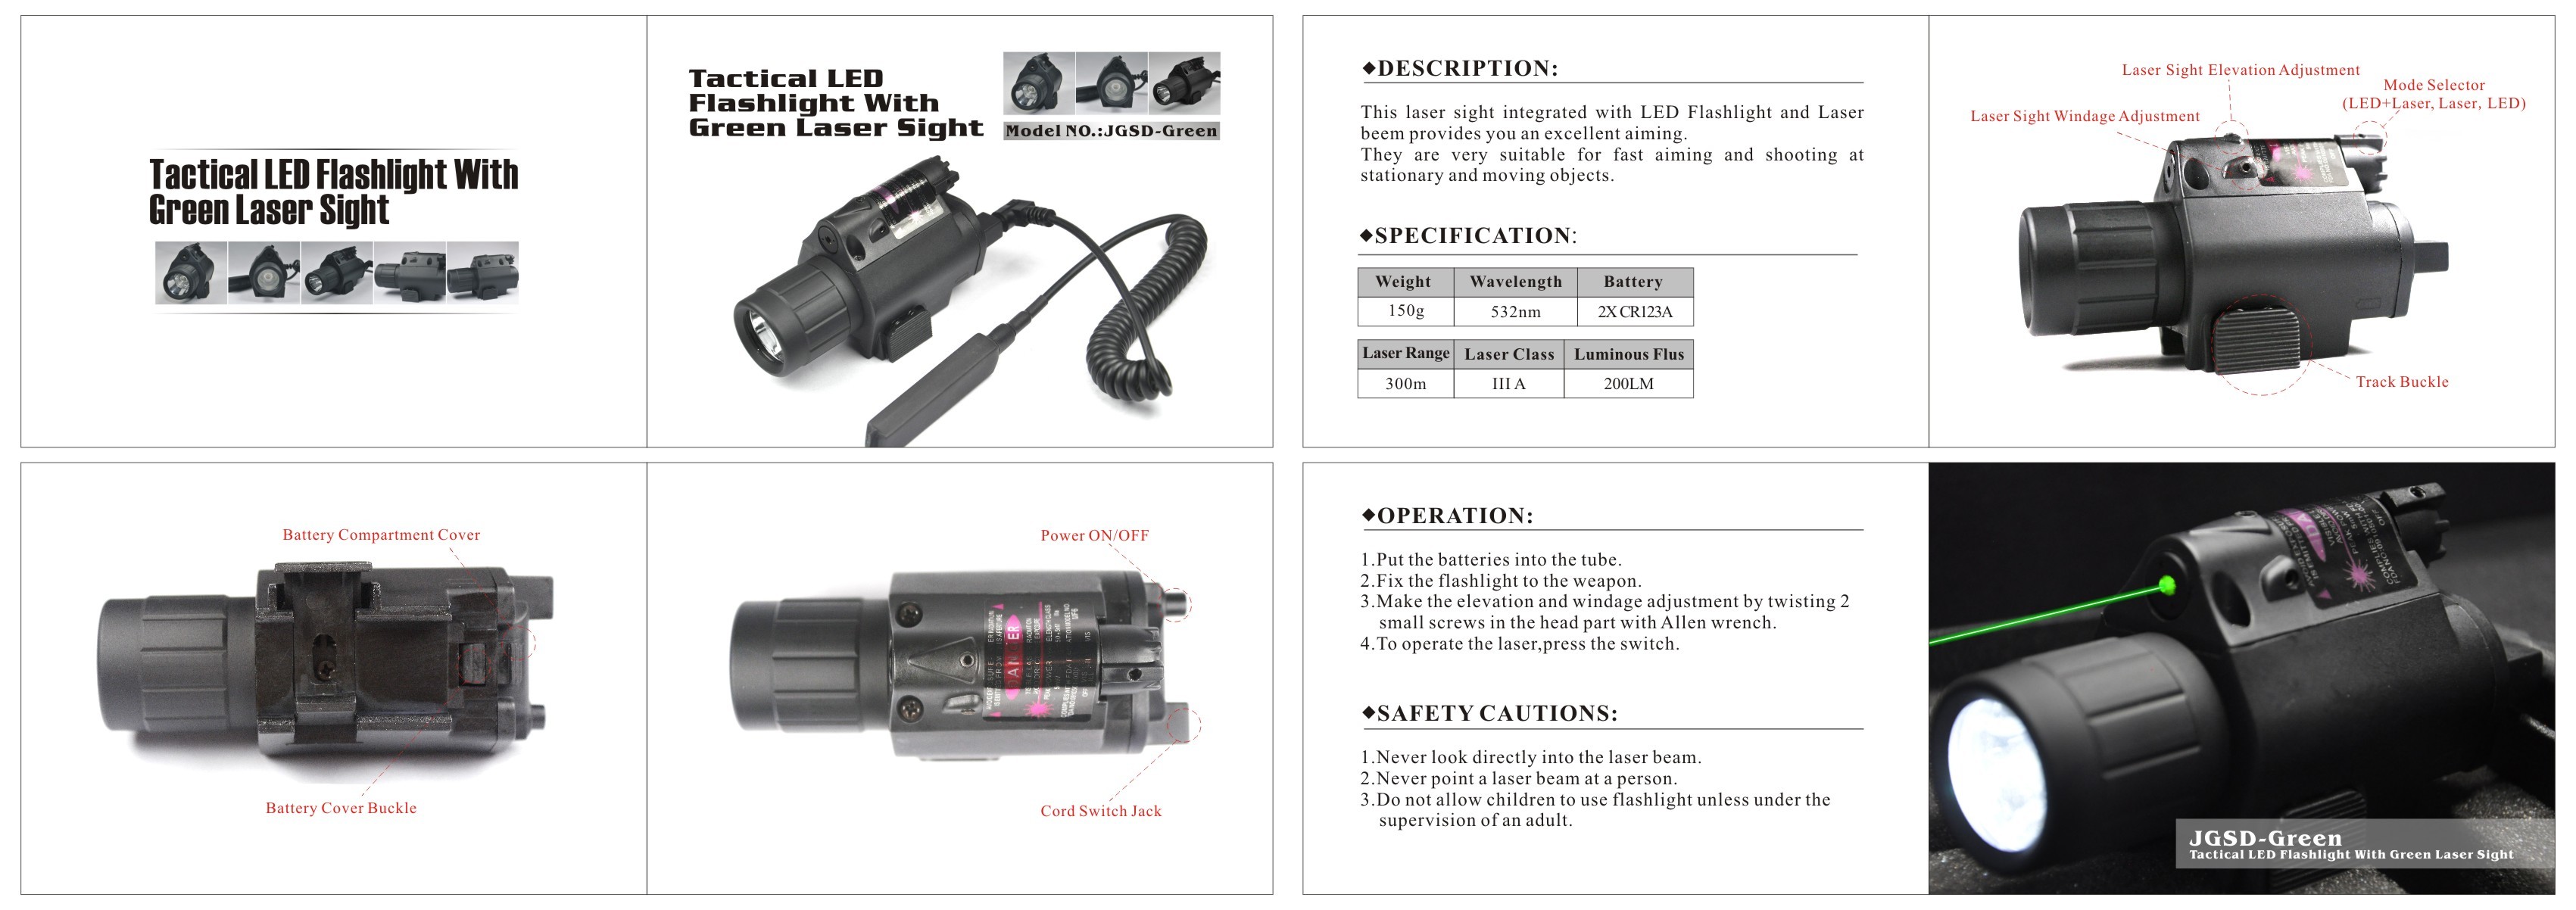 optics,laser sight,flashlight with mount,Primoptics LED Tactical Flashlight with Quick Release QD Mount Pistol Gun Acces